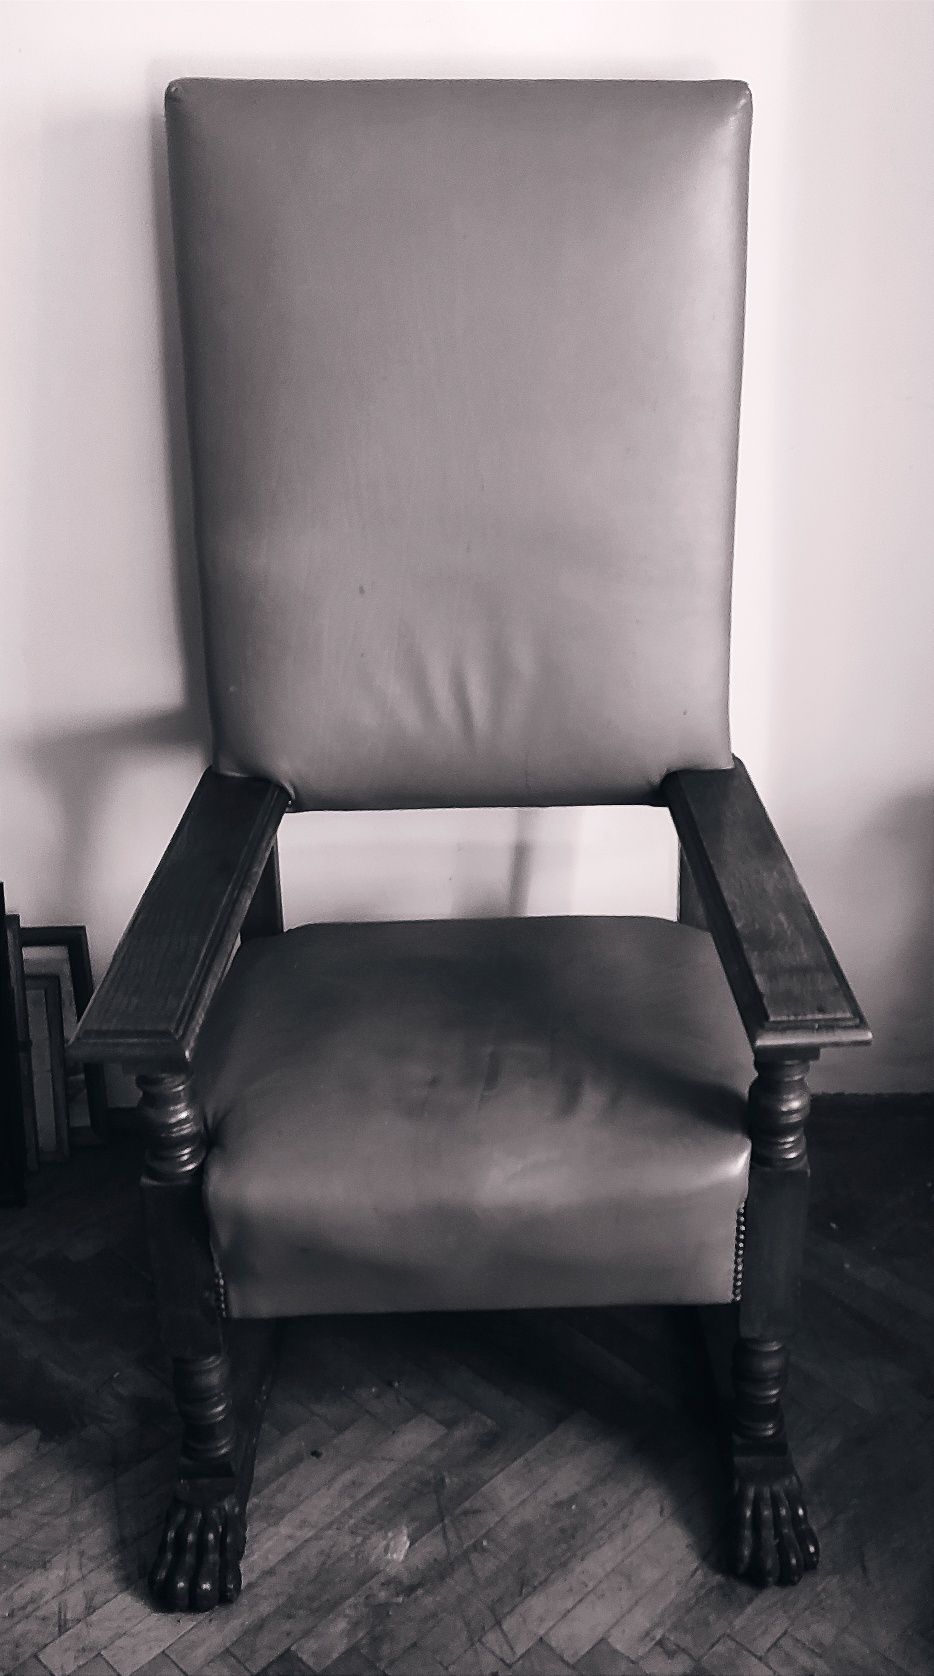 Duży tron fotel neorenesansowy na lwich łapach  XIX wiek